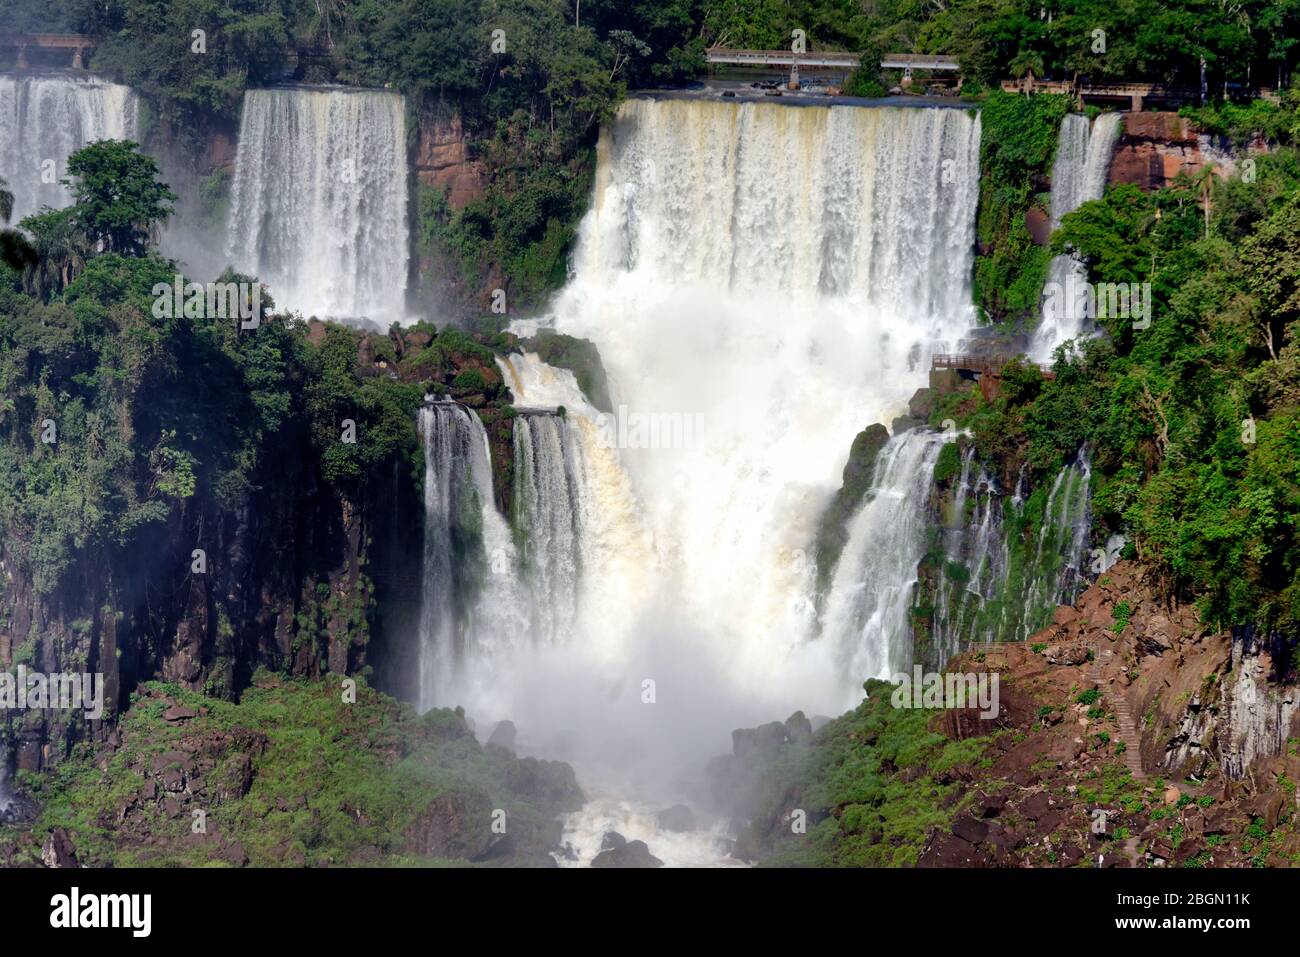 Les magnifiques torrents des chutes d'Iguacu, Brésil Banque D'Images